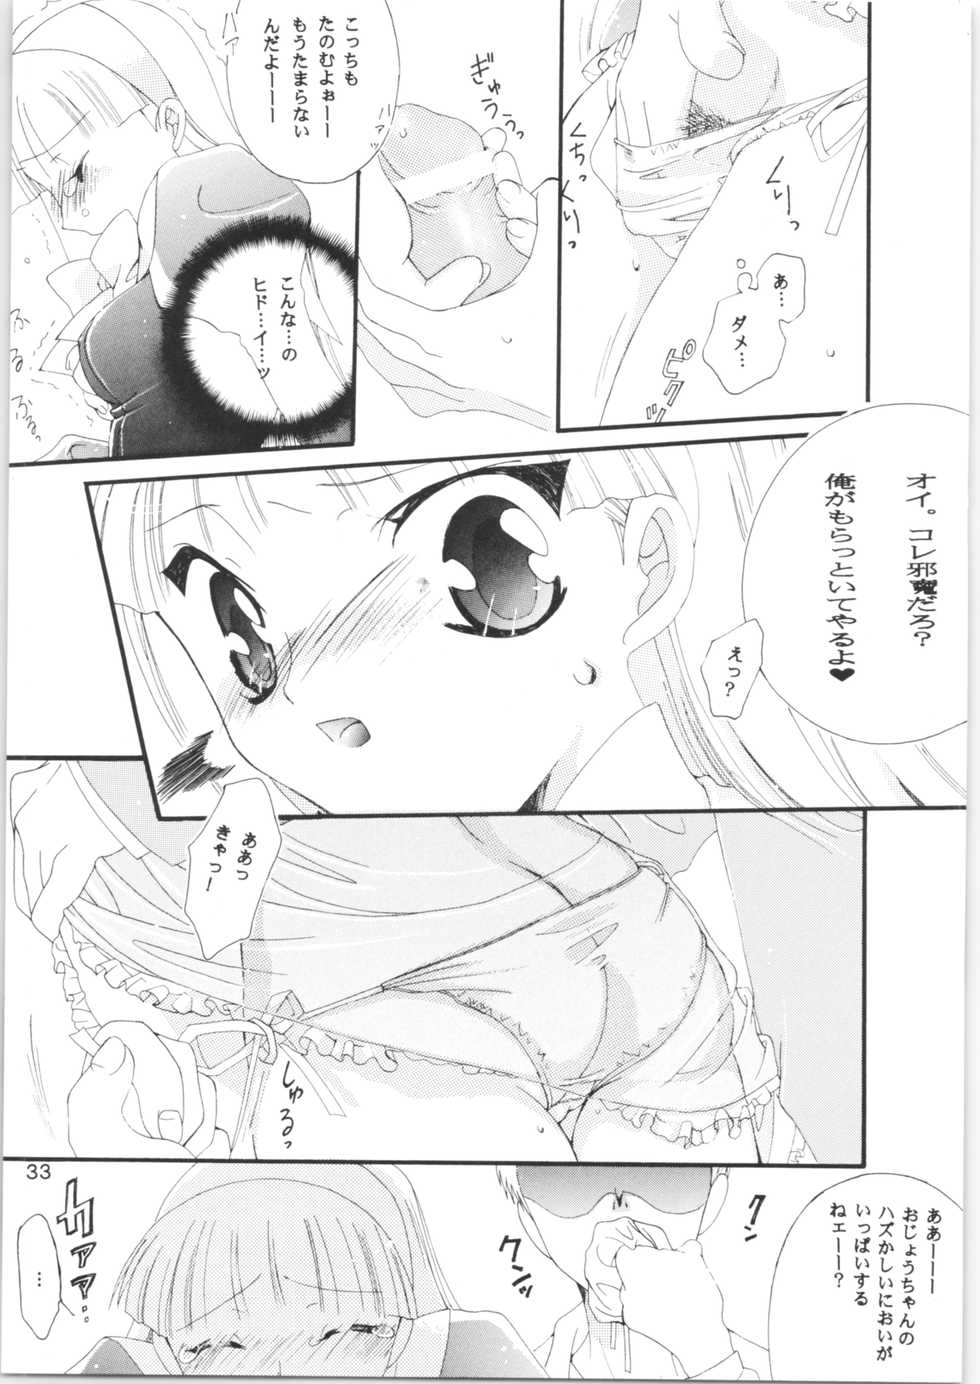 [Tachineko Miya (Fukuoka Kisara, Chiei)] Koku Kono Hi o Zutto Wasurenai (Magic Knight Rayearth) [2000-10-29] - Page 32